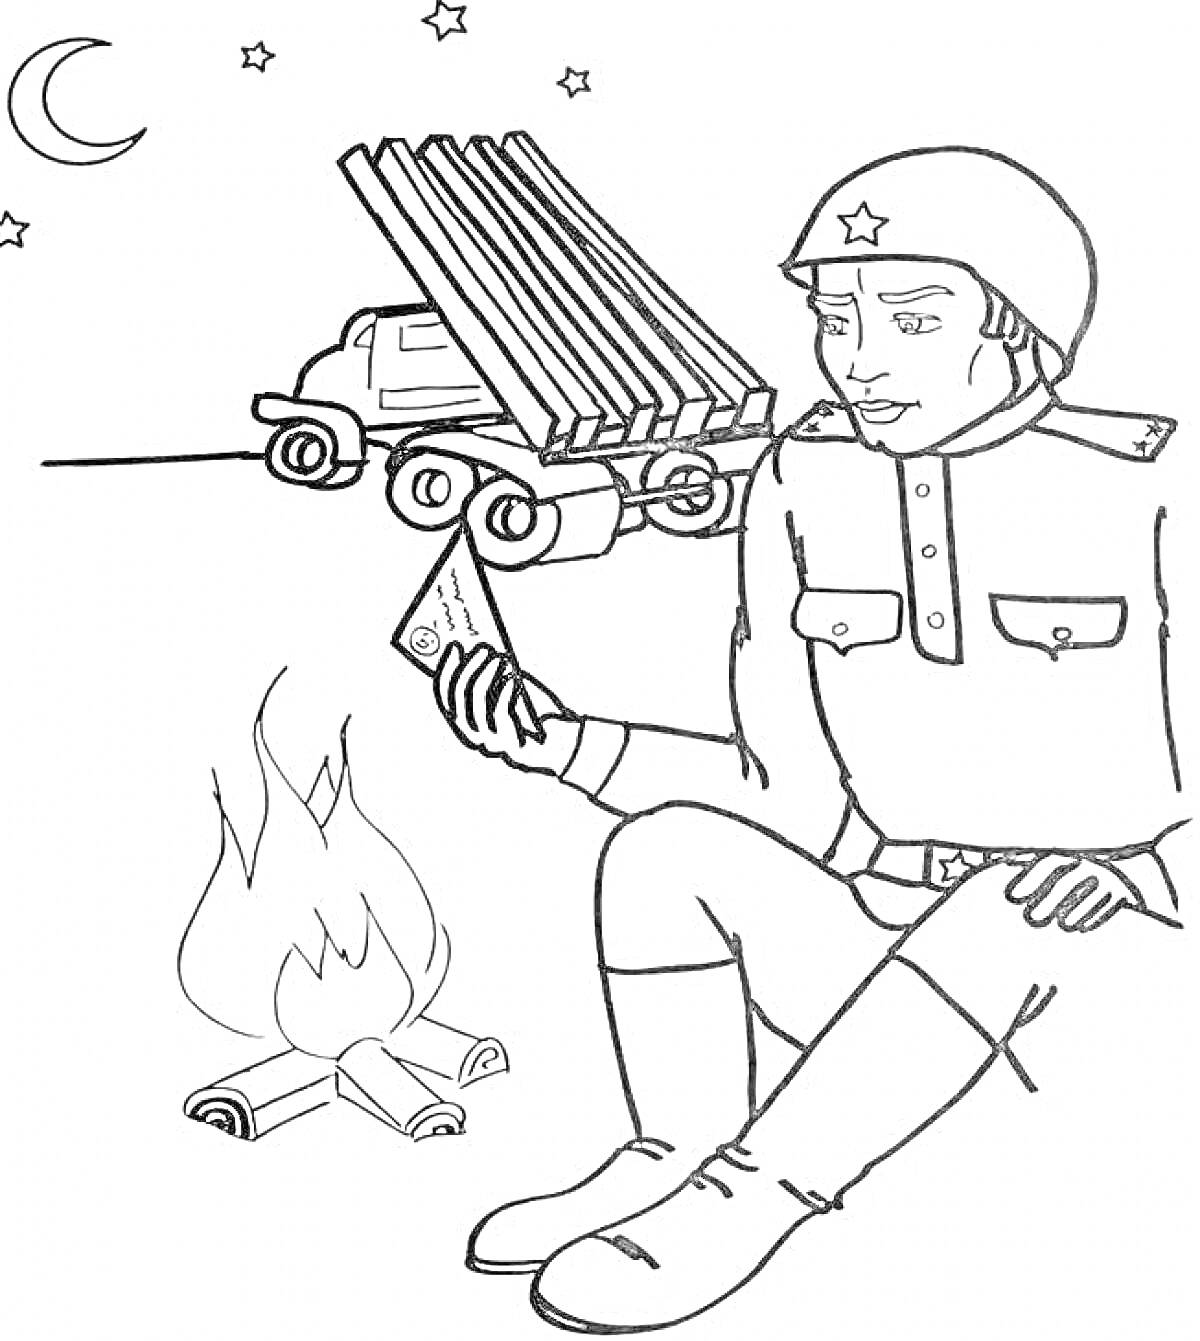 Раскраска Солдат сидит у костра и читает письмо, на заднем плане грузовик с ракетной установкой, ночь с луной и звездами